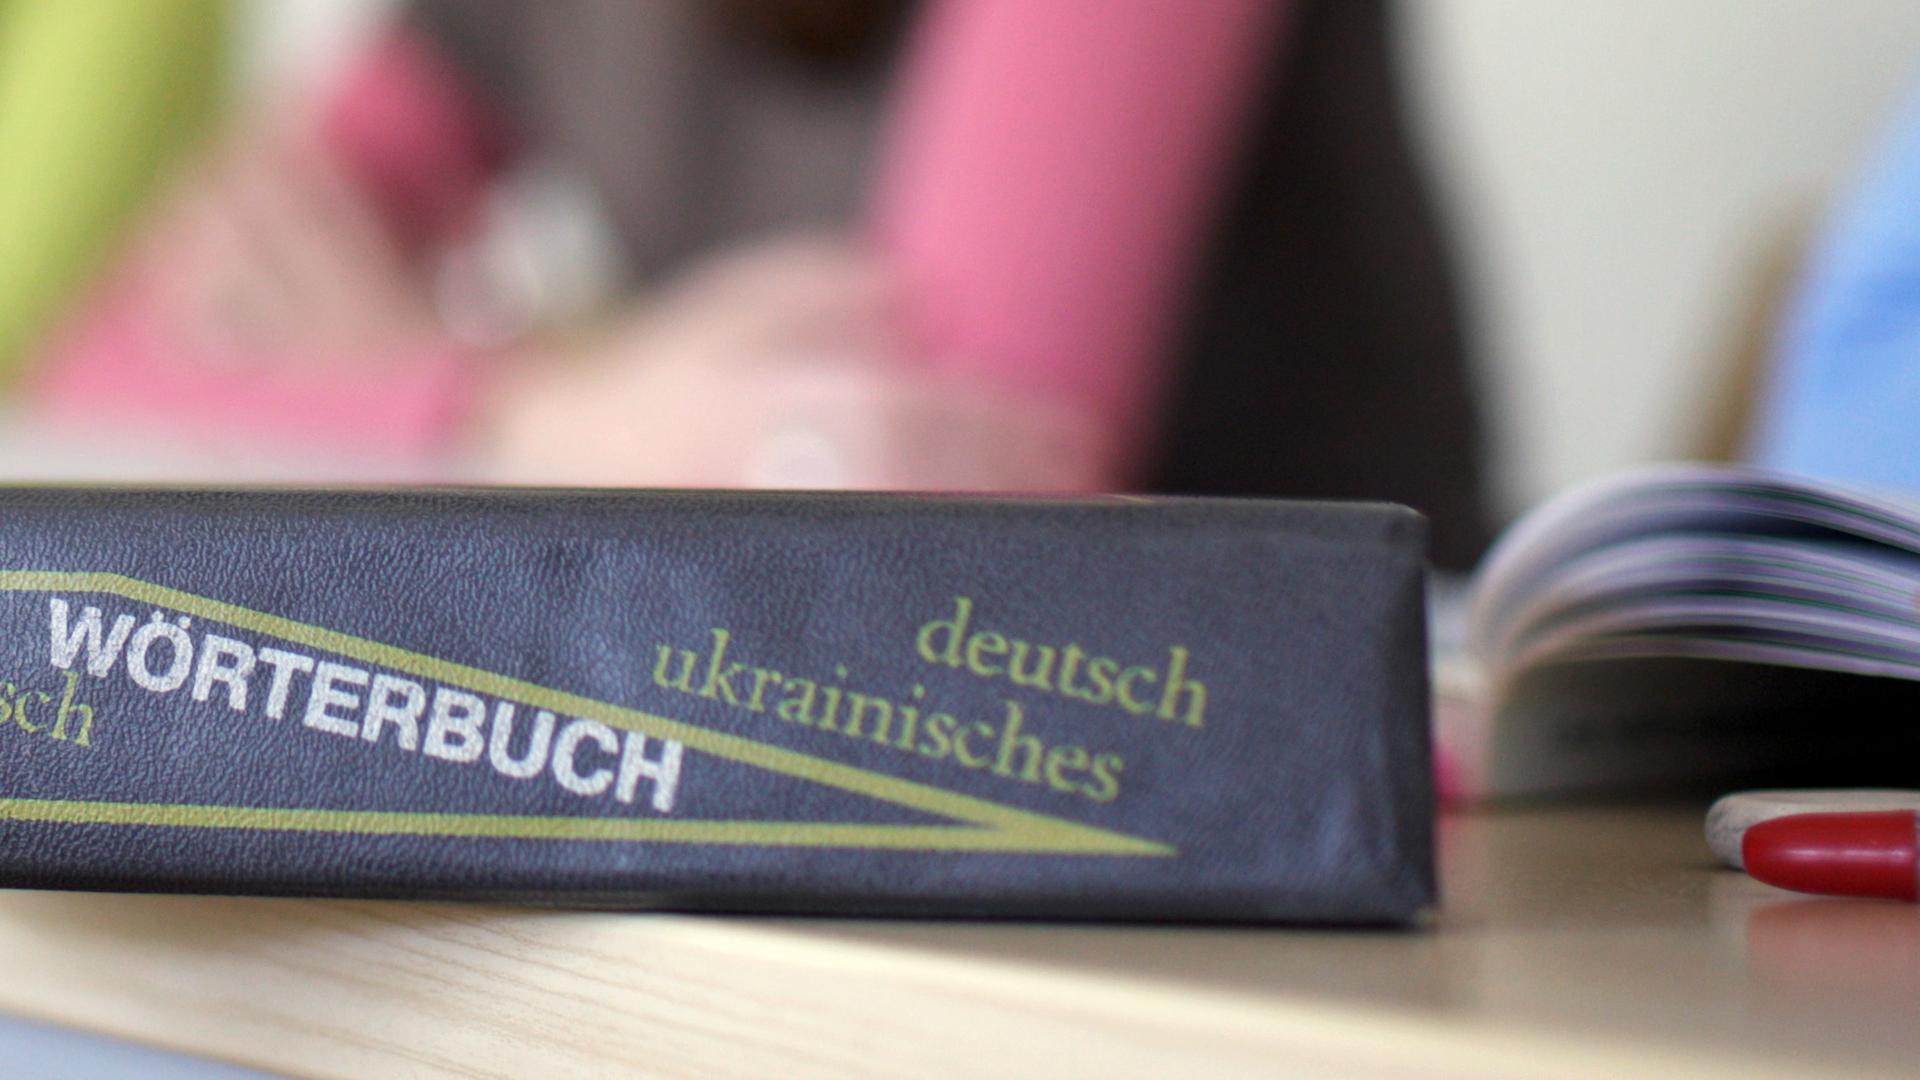 Ein Wörterbuch der deutschen und ukrainischen Sprache liegt auf einem Tisch 